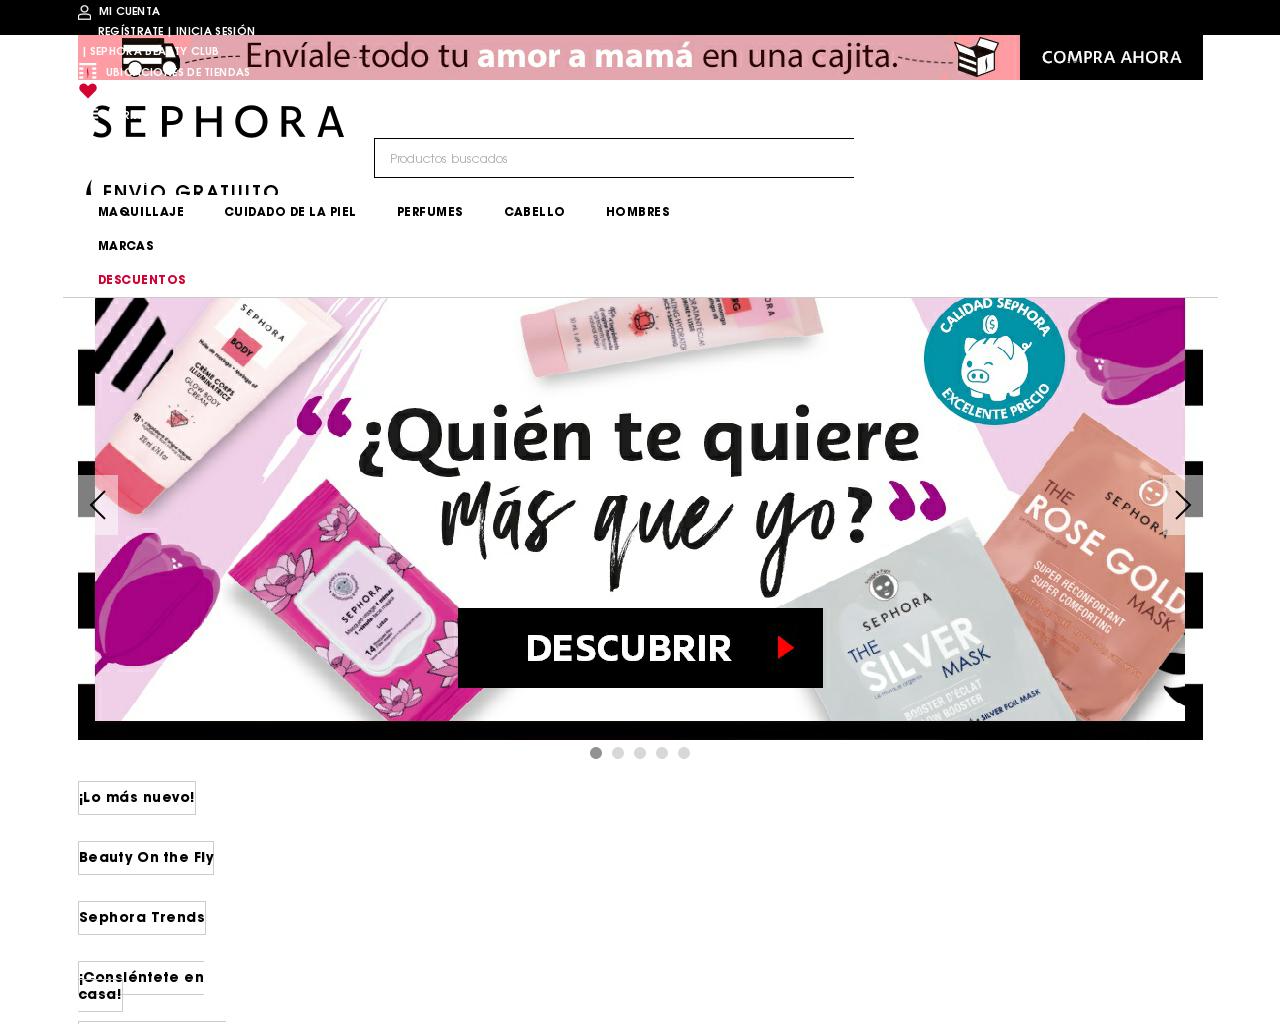 sephora.com.mx